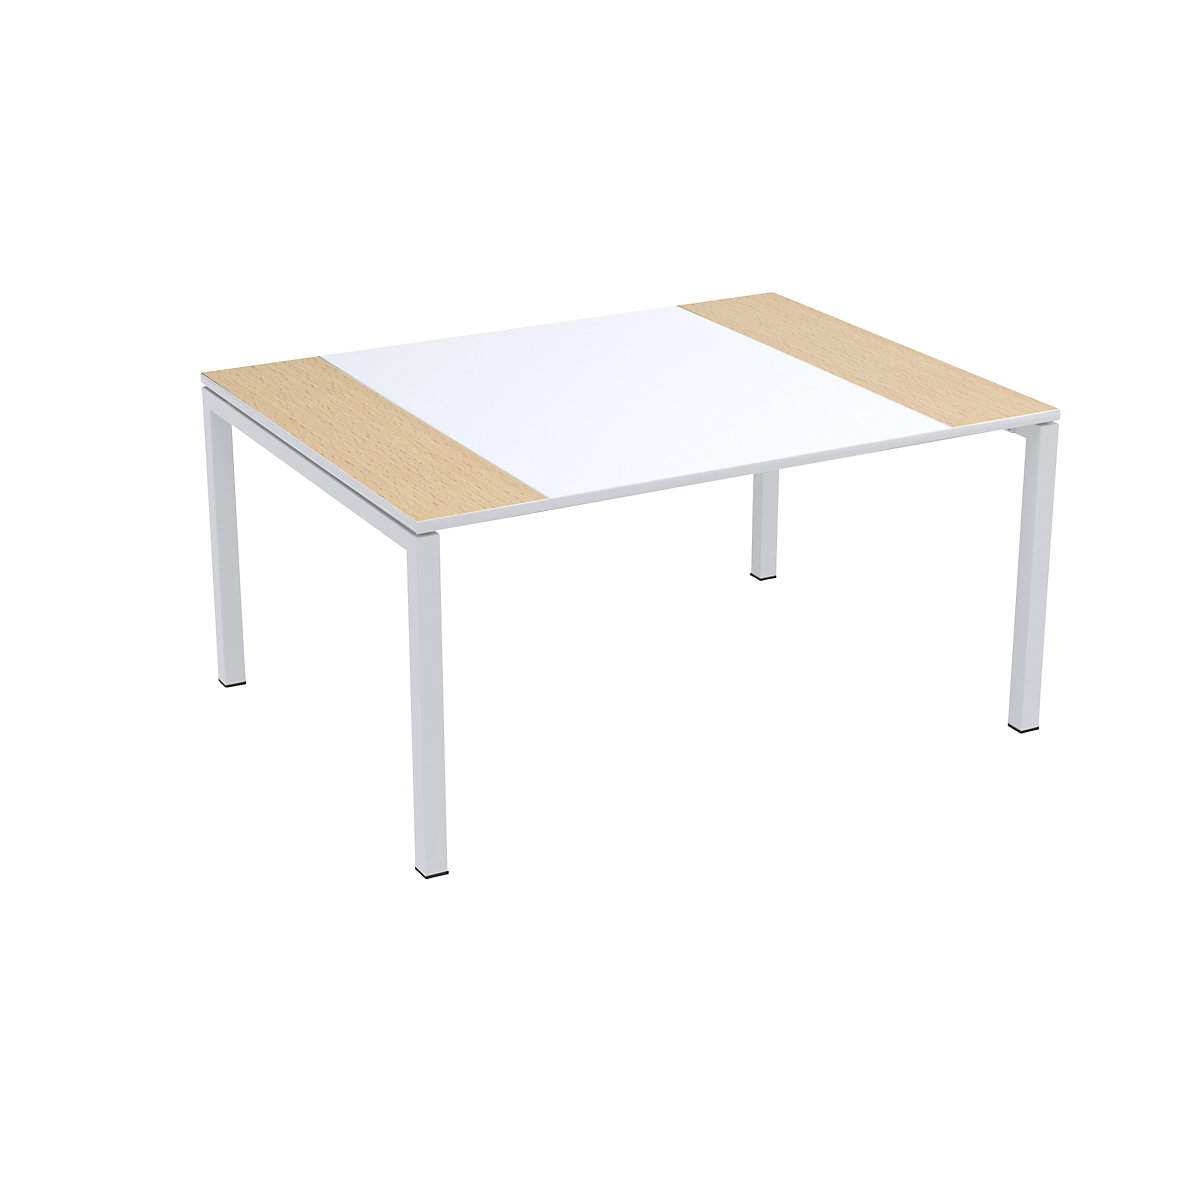 Konferenztisch easyDesk® Paperflow, HxBxT 750 x 1500 x 1160 mm, weiß/Buche-Dekor-3